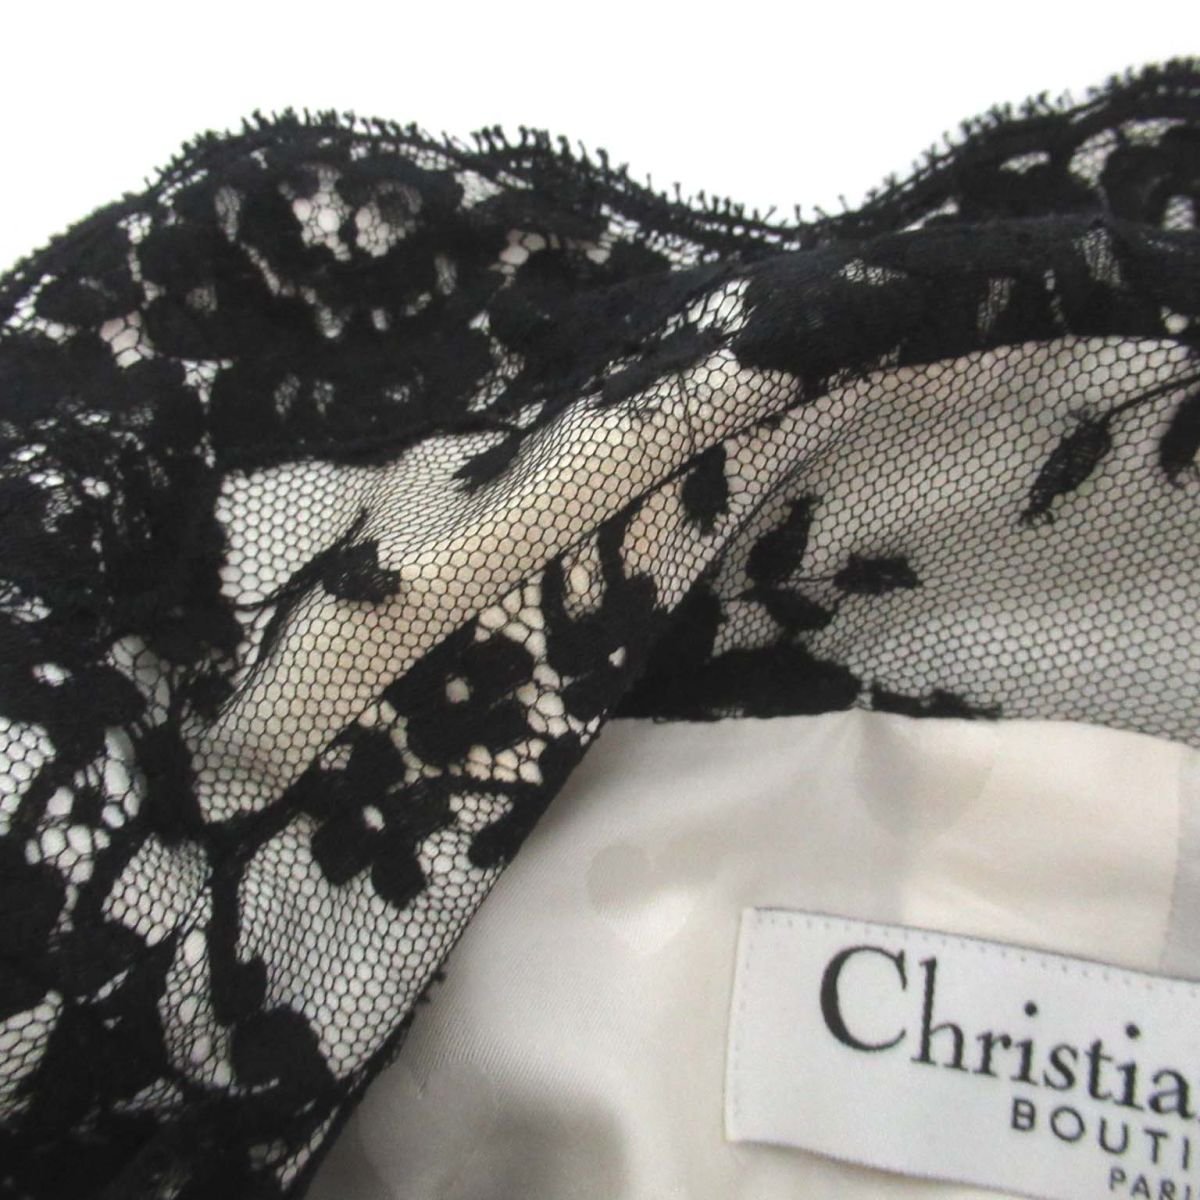  прекрасный товар Christian Dior Christian Dior Galliano период цветок рисунок гонки кнопка-застежка передний tailored jacket F38 черный 